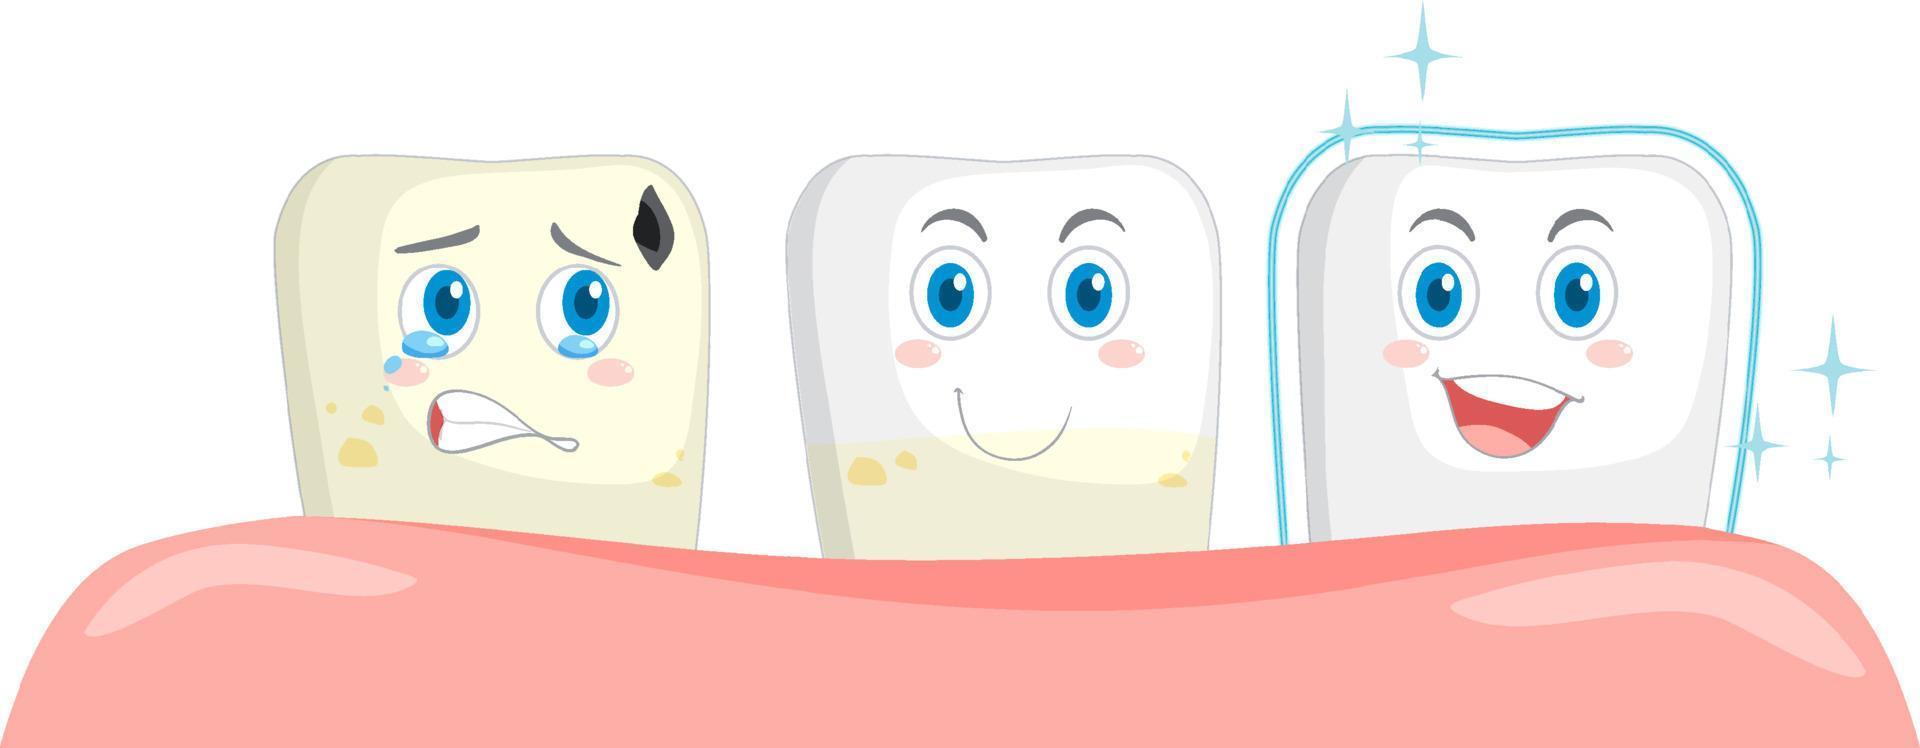 dentala och olika tänder skick på vit bakgrund vektor